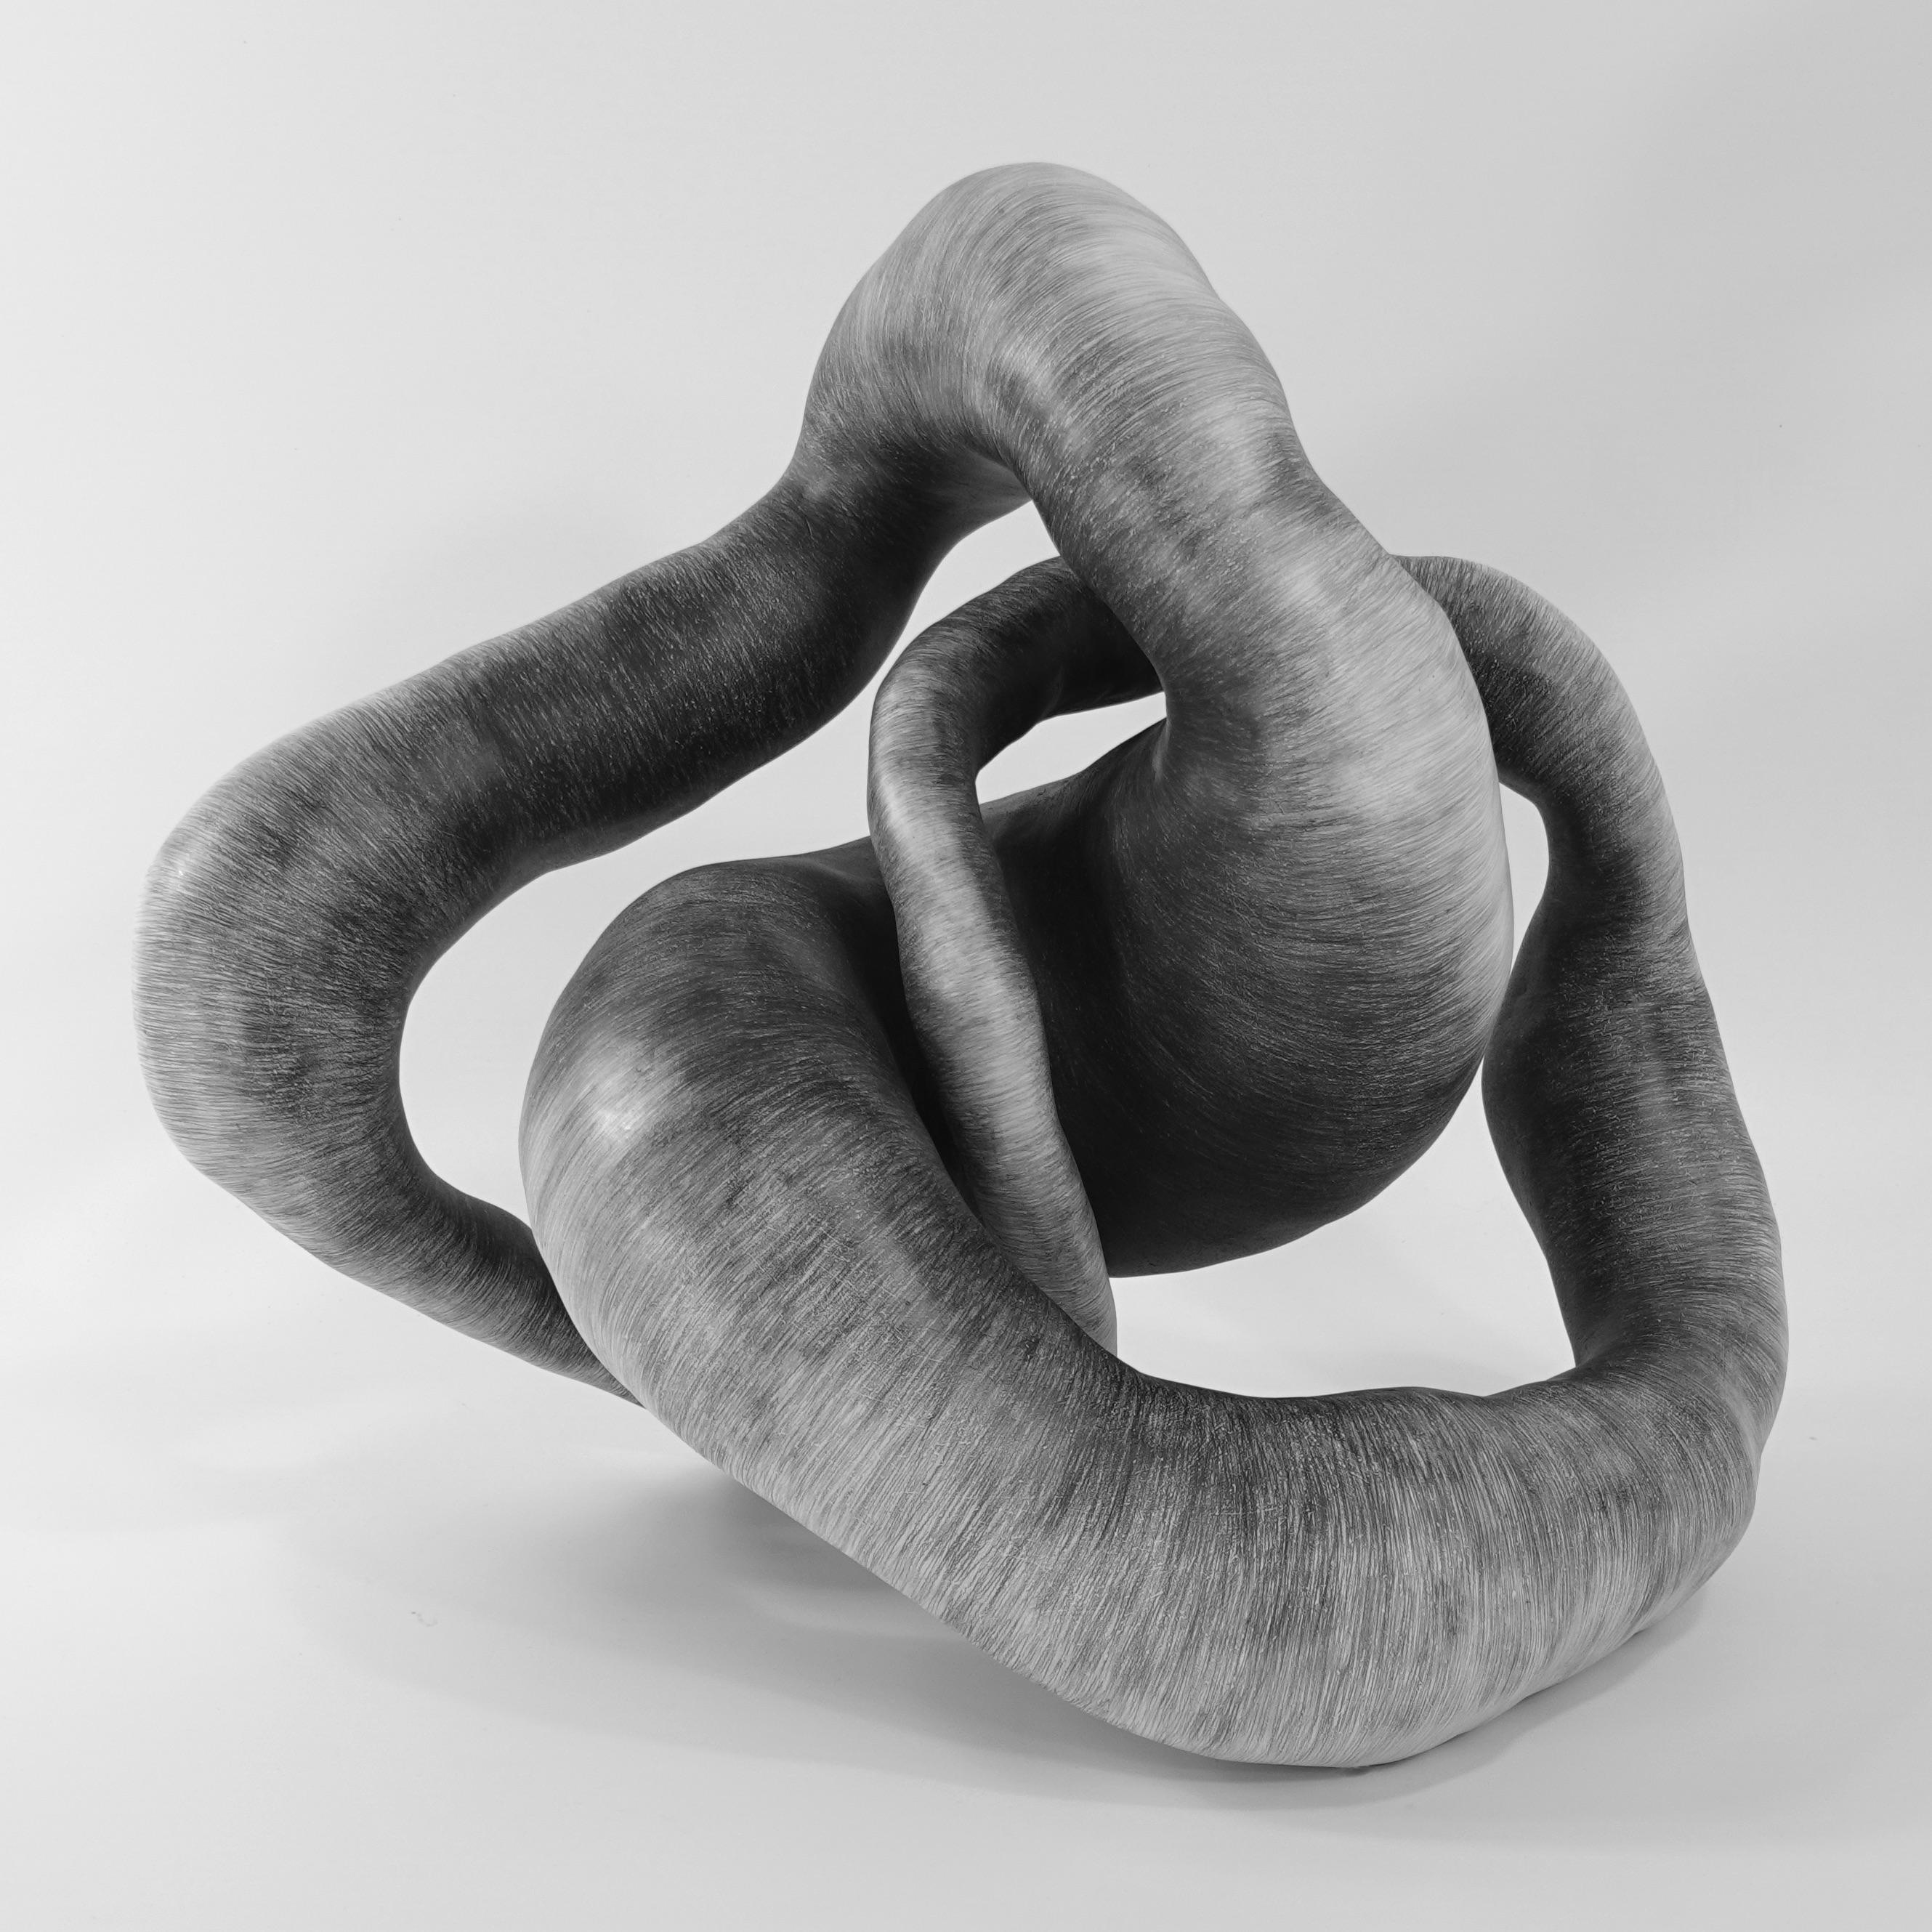 Sculpture abstraite minimale en noir et blanc : "TWIST".